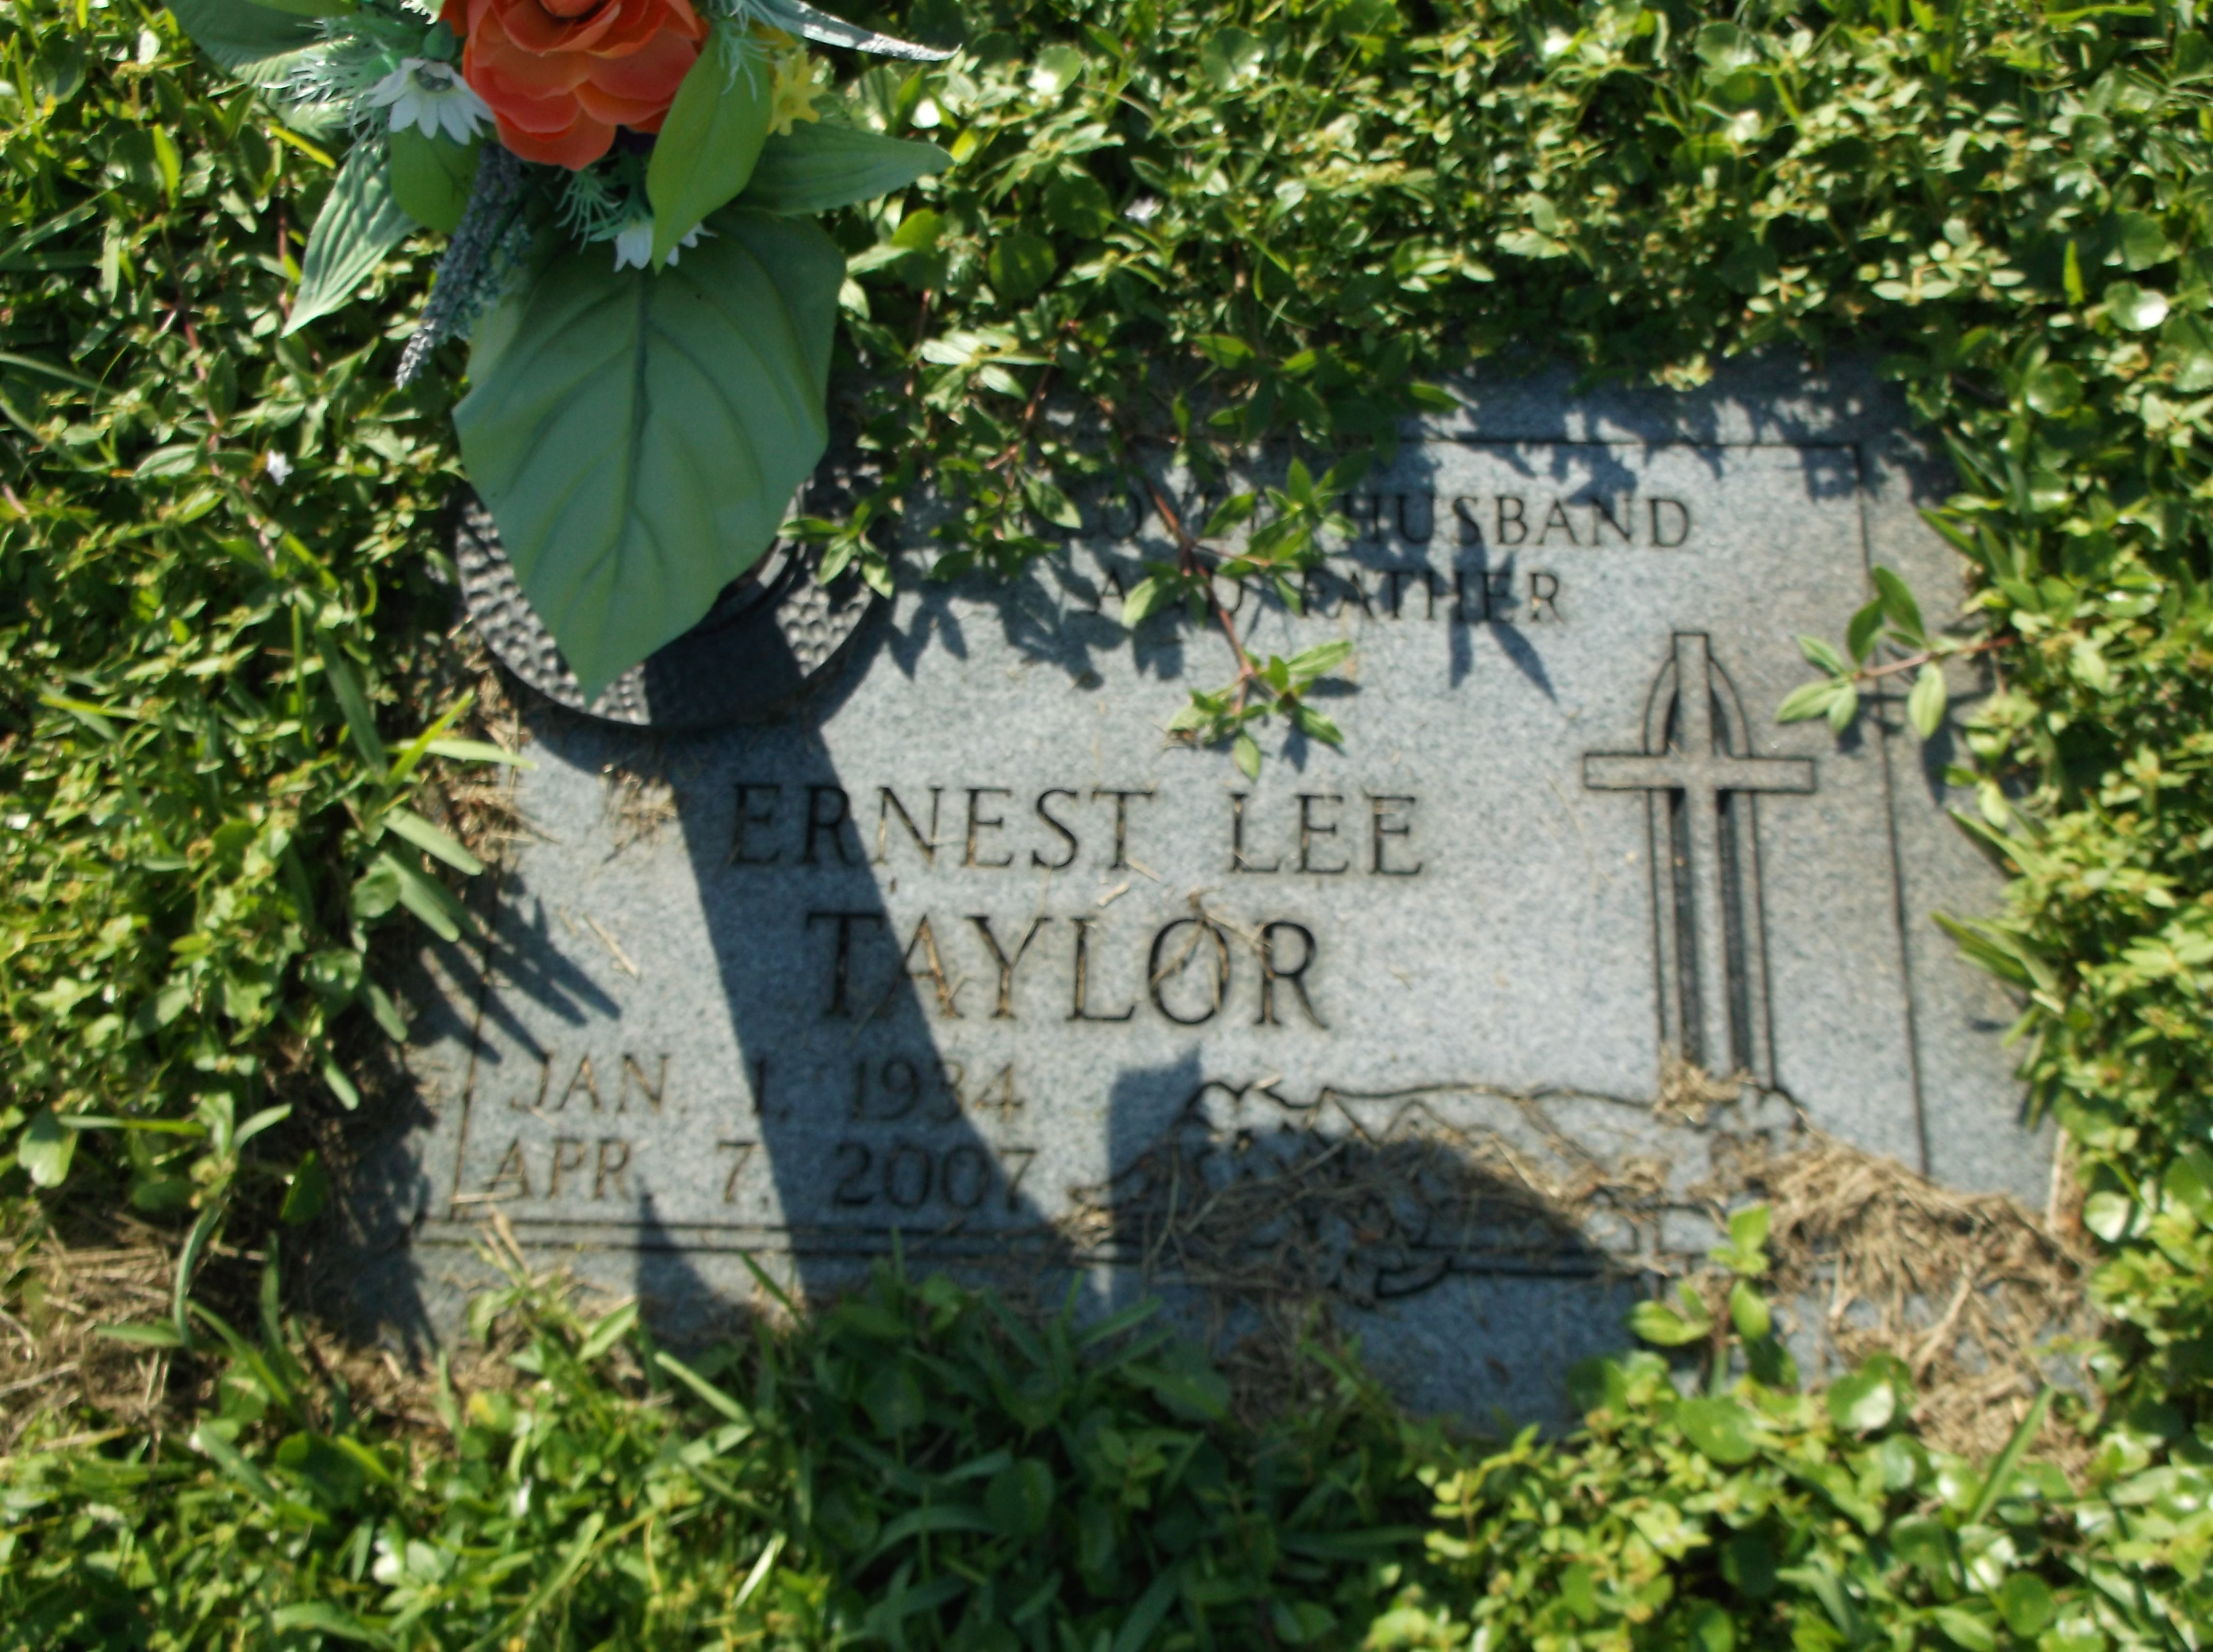 Ernest Lee Taylor